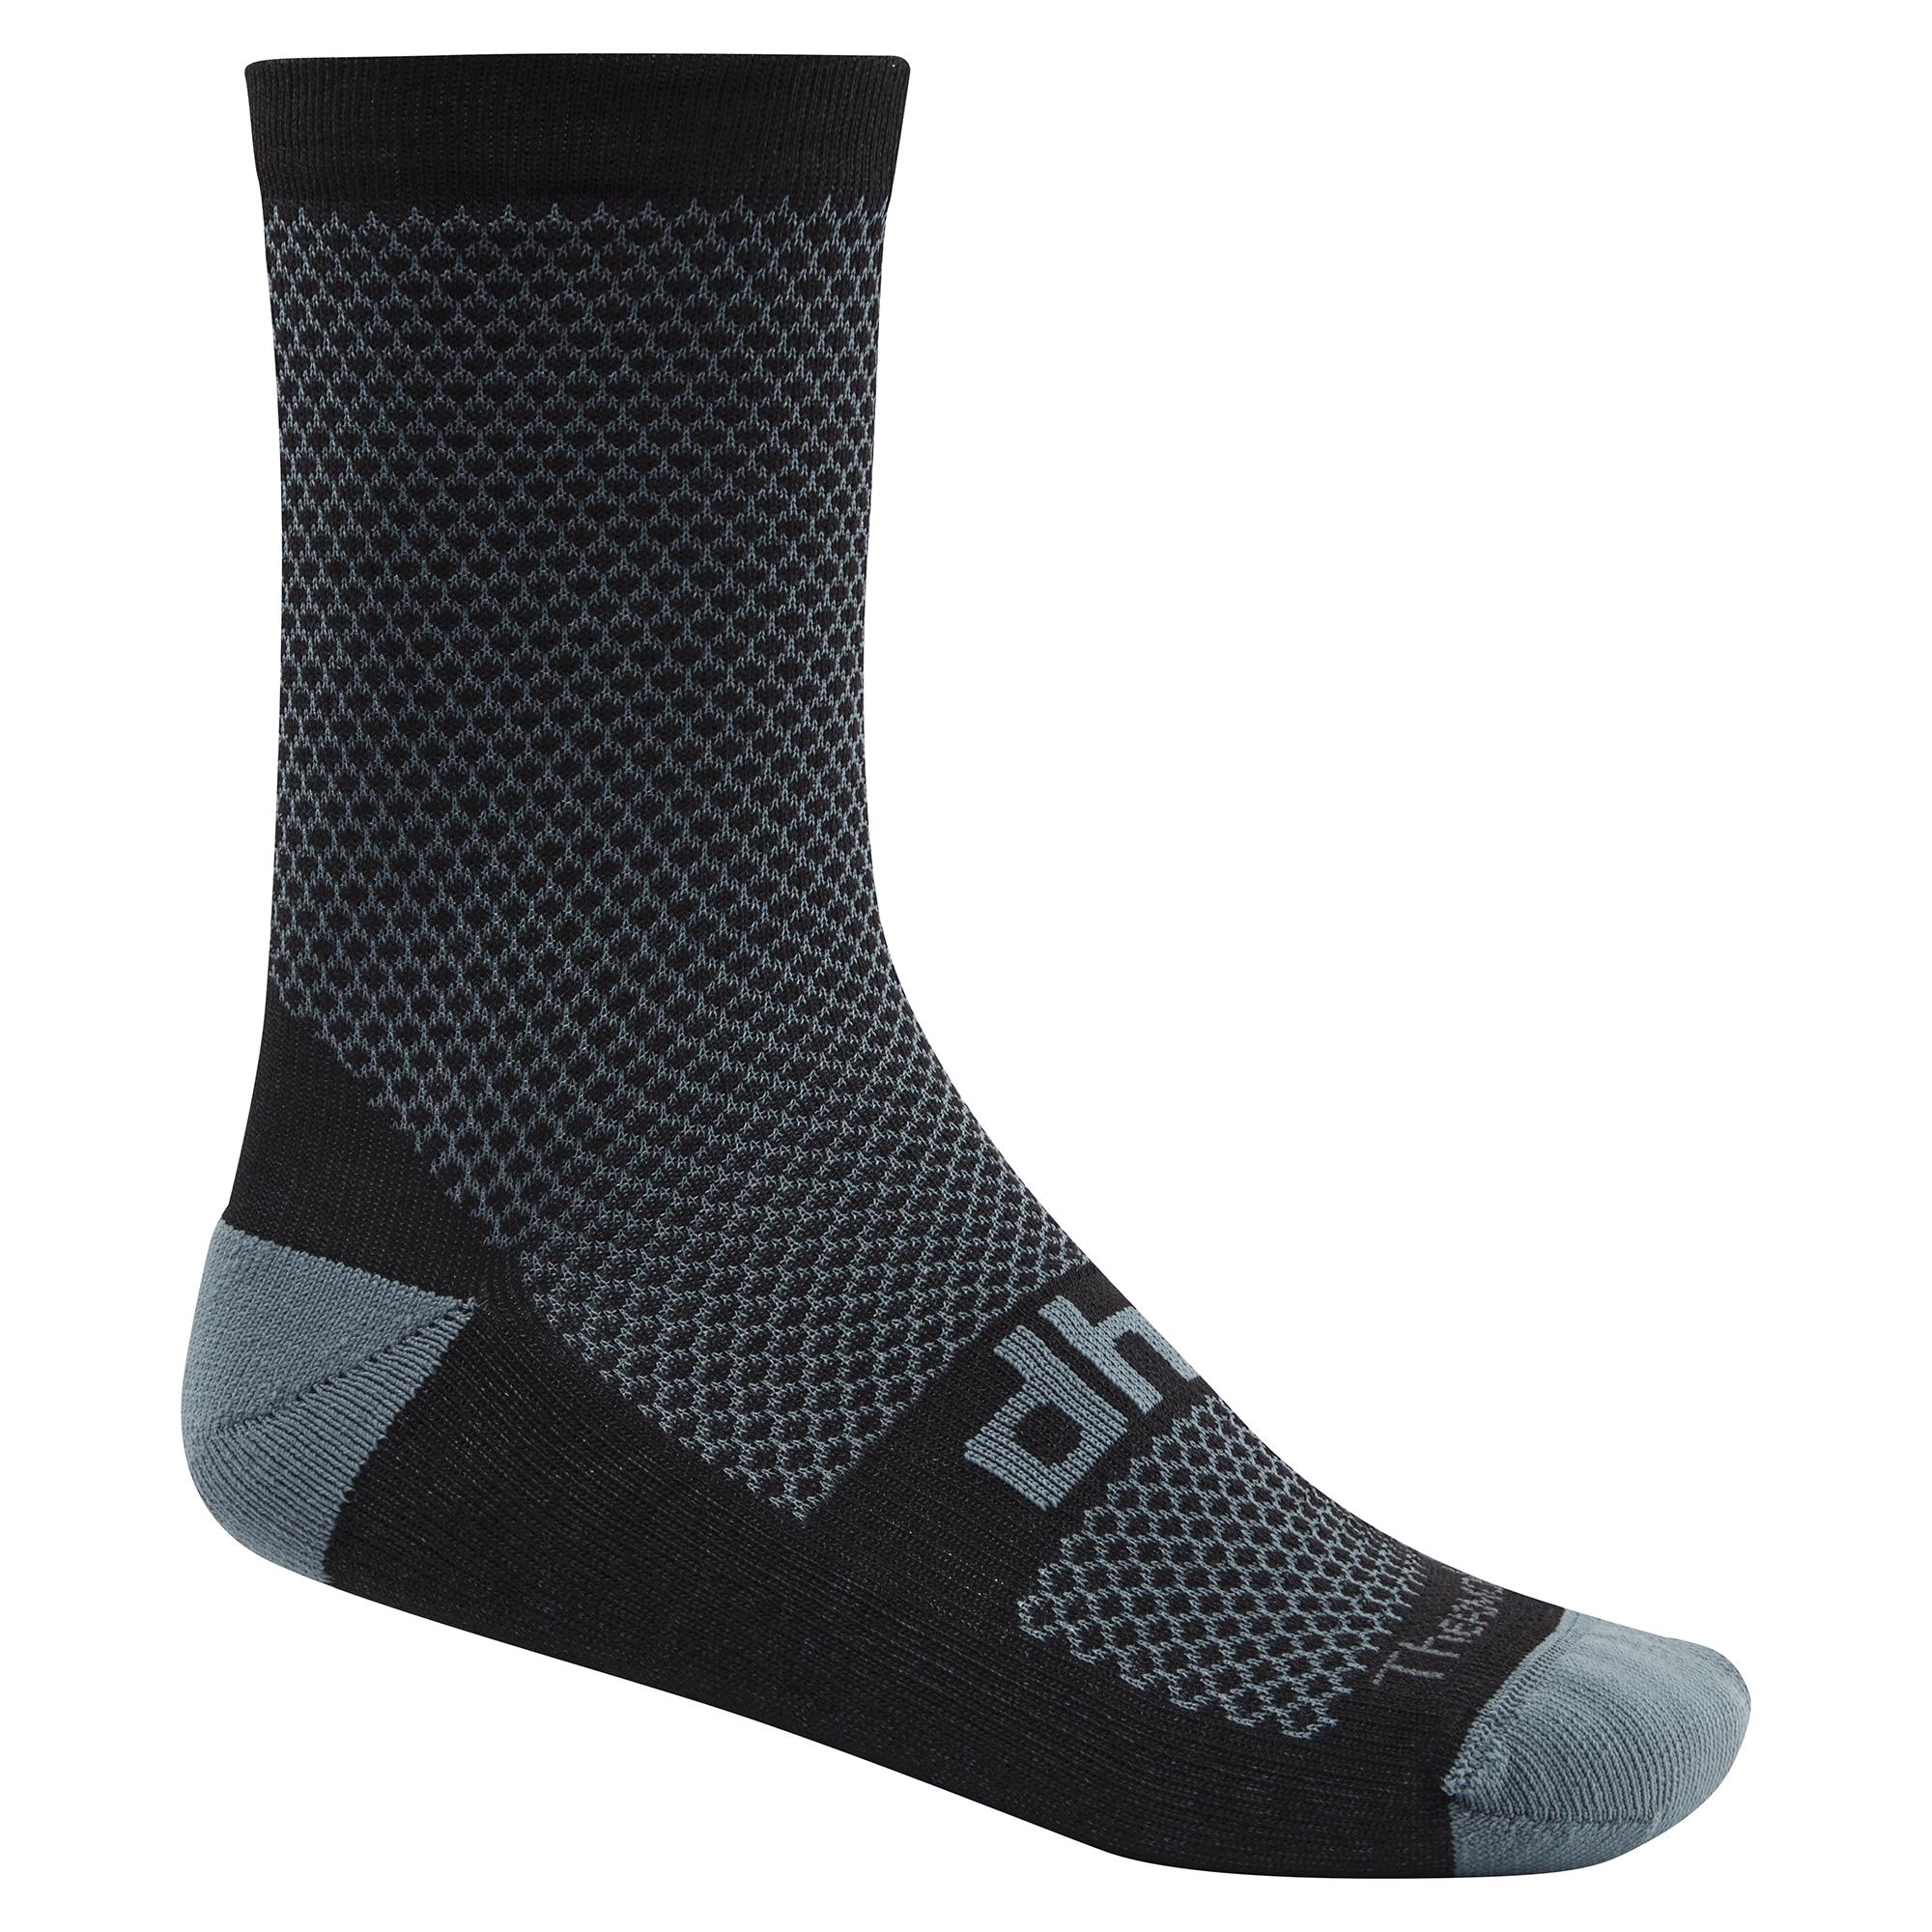 Dhb Blok Classic Thermal Sock 16cm - Black/grey